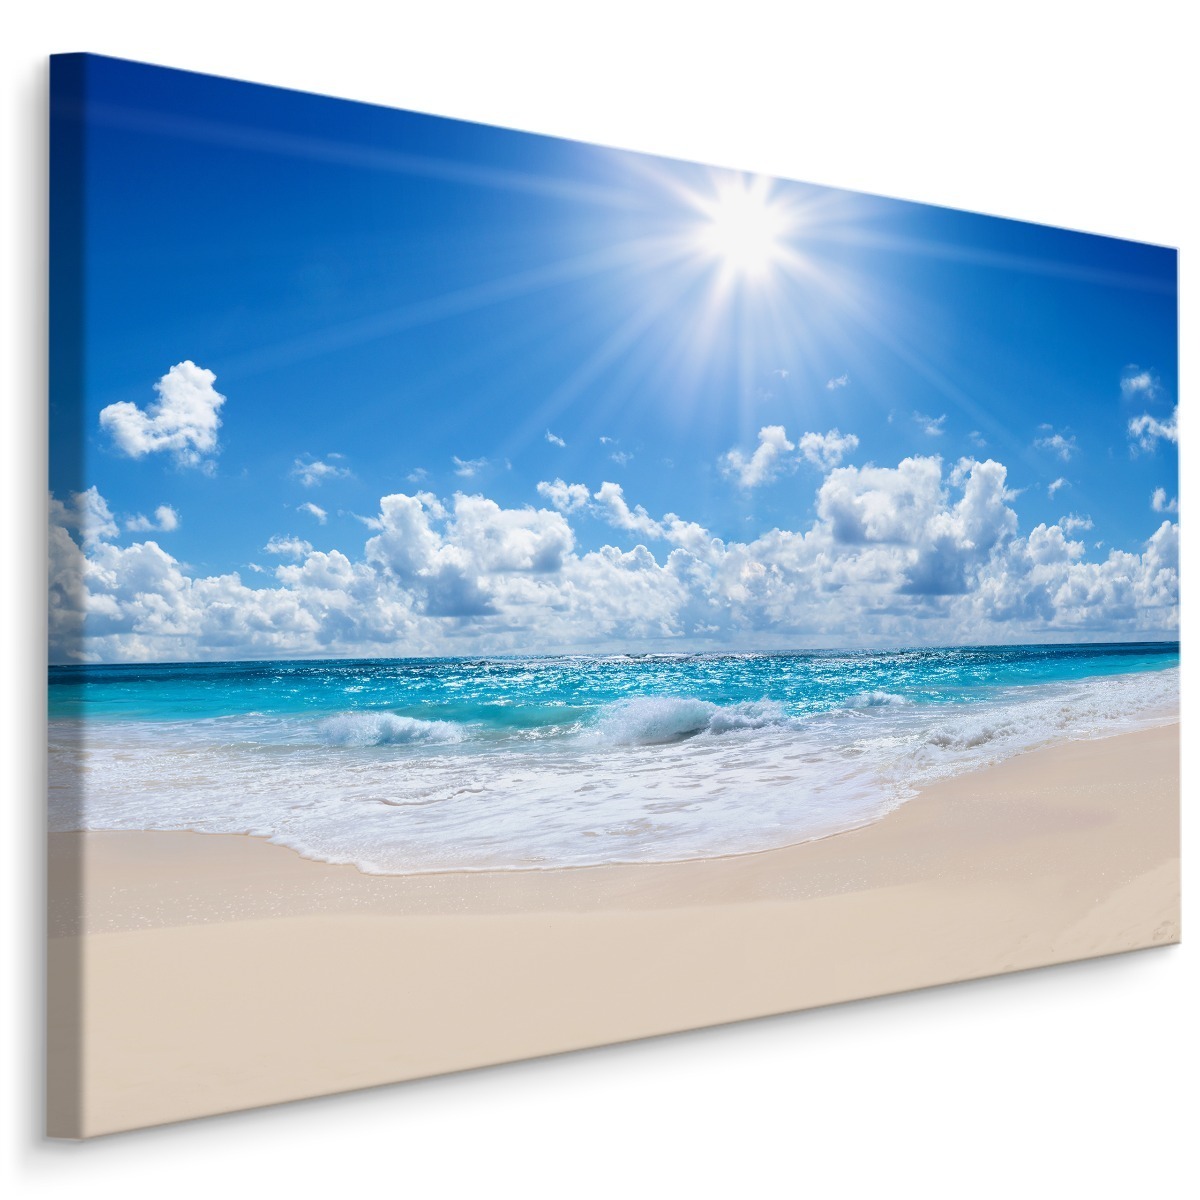 Plátno Klidné Moře A Pláž 100x70 cm